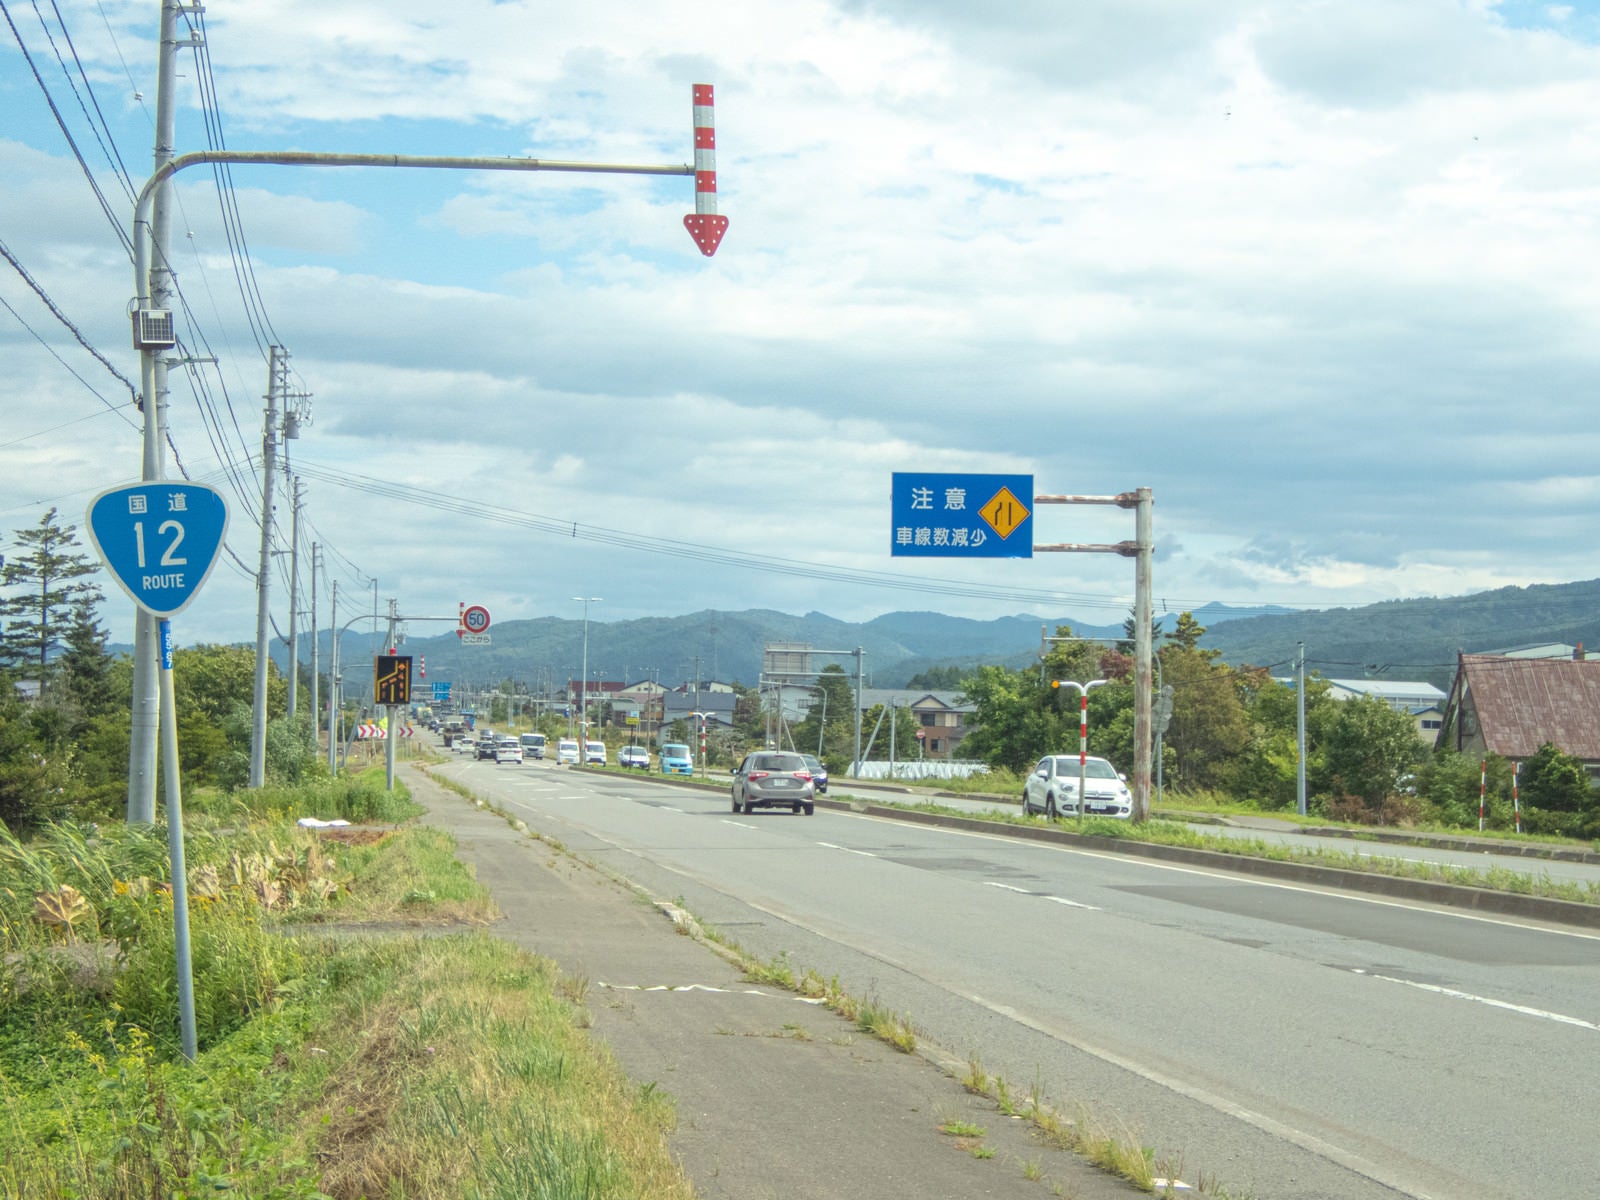 日本一長い直線道路「国道12号線」 – 観光素材 – HOKKAIDO TRAVEL NAVI